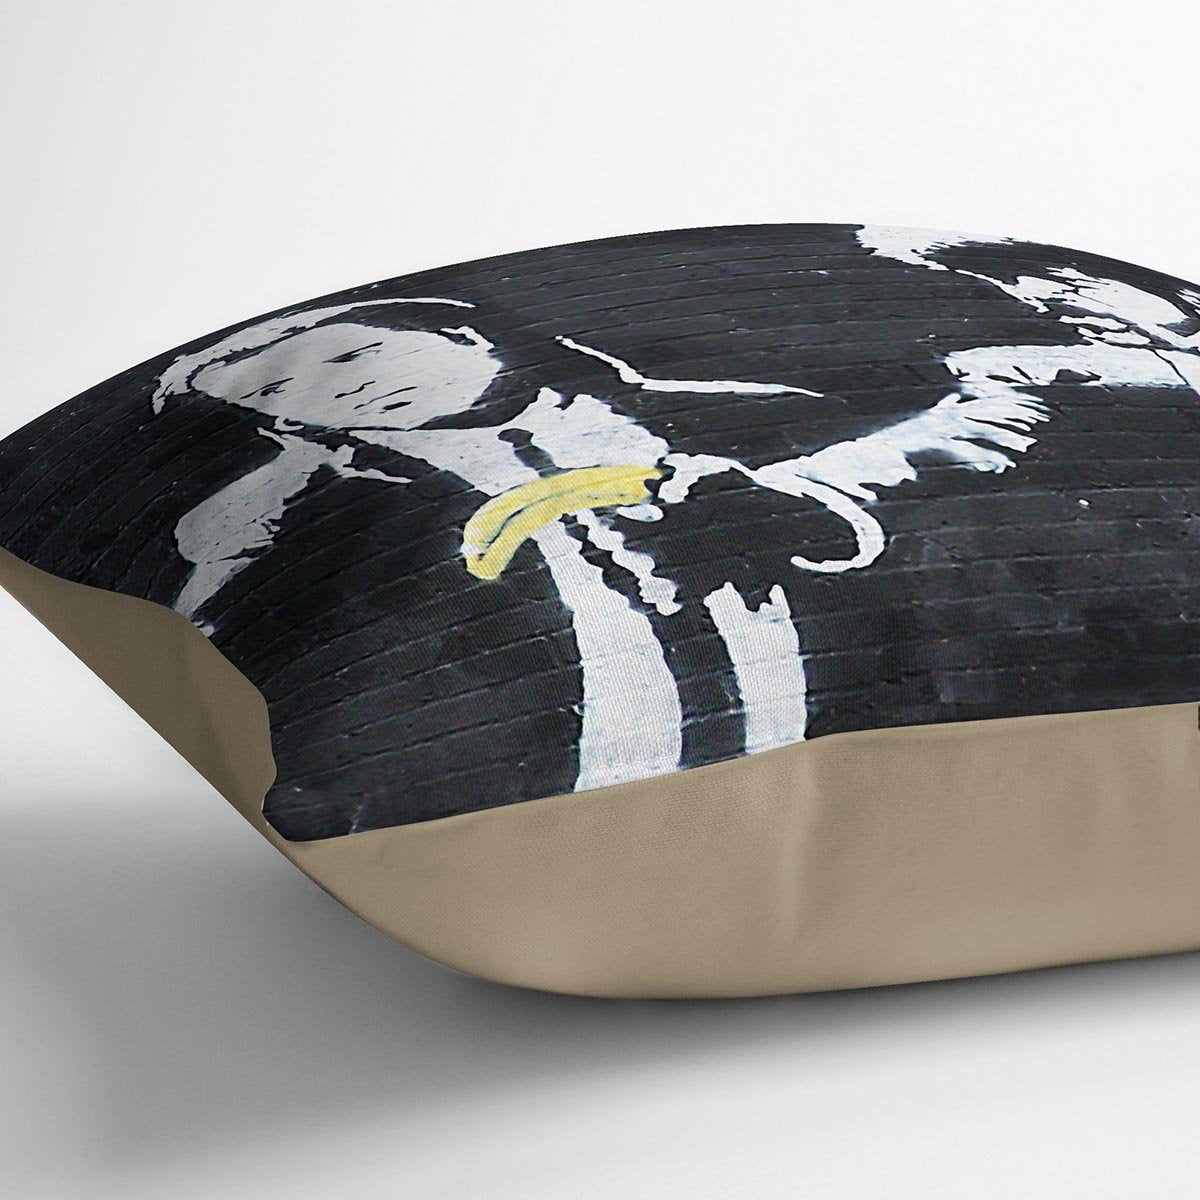 Banksy Pulp Fiction Banana Guns Cushion